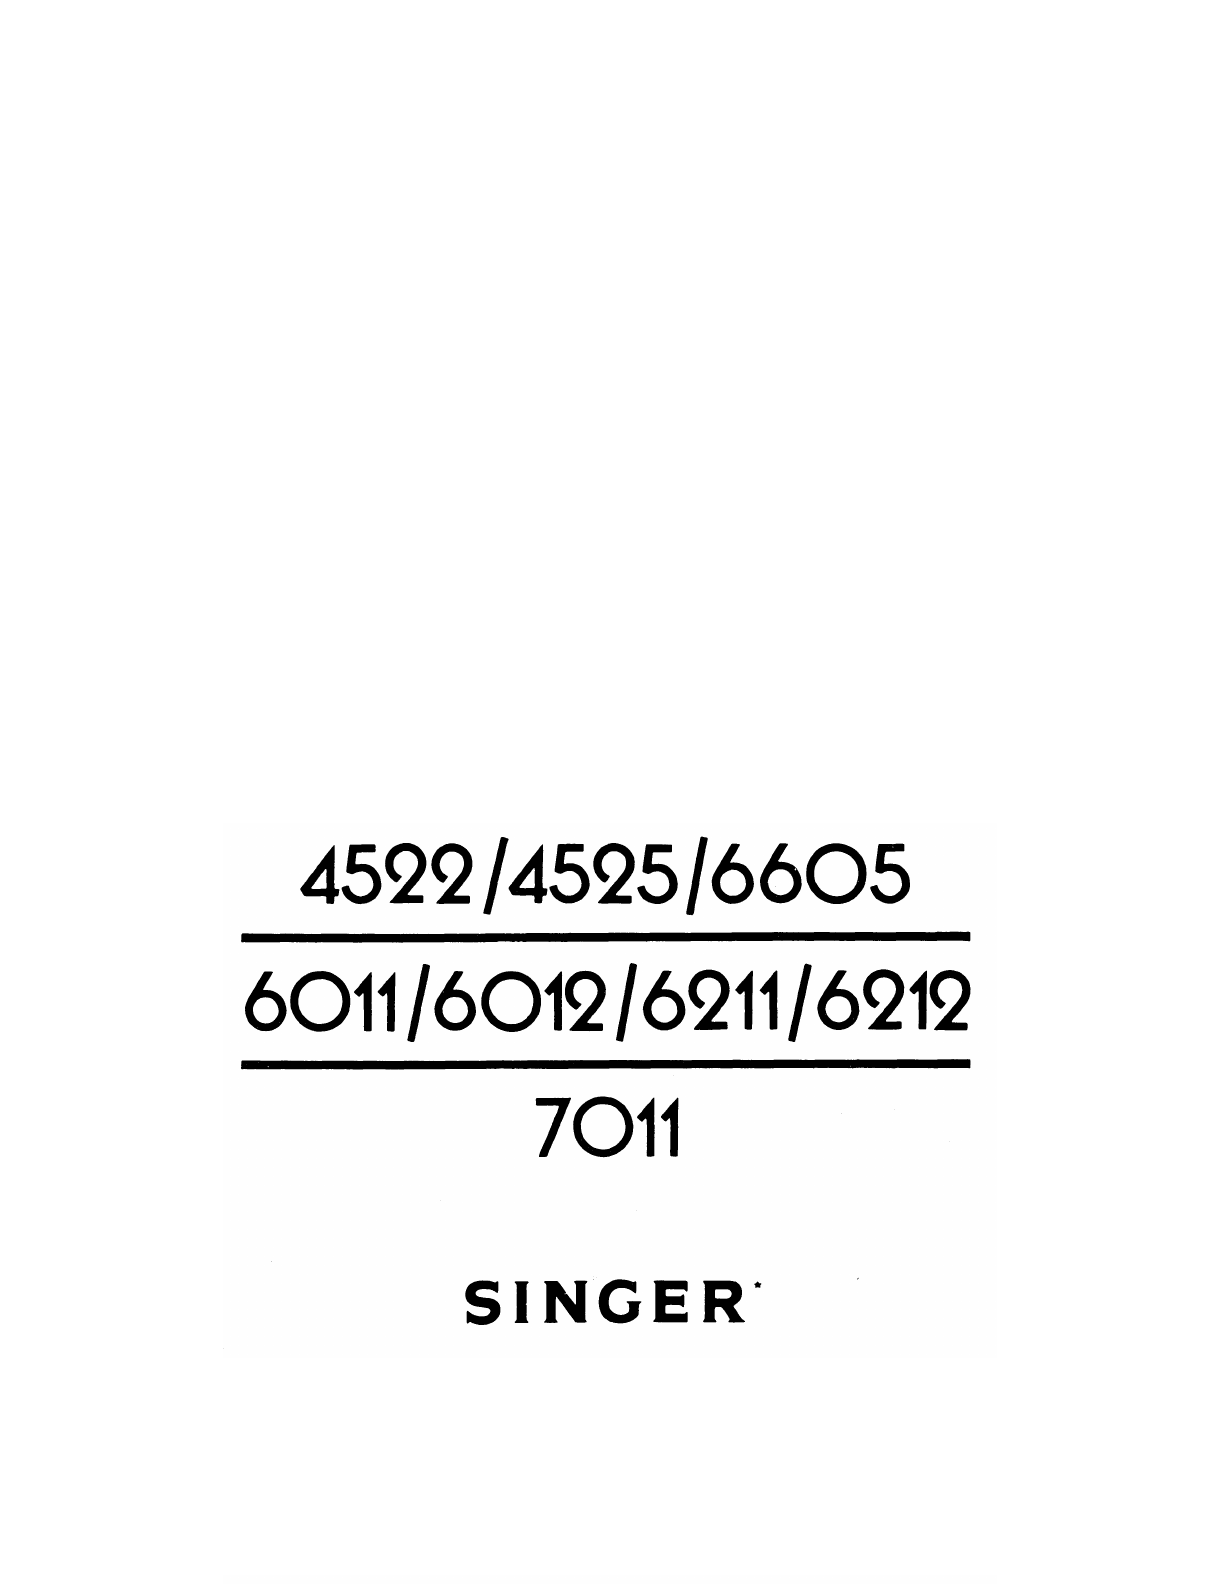 mnual for singer 6211c